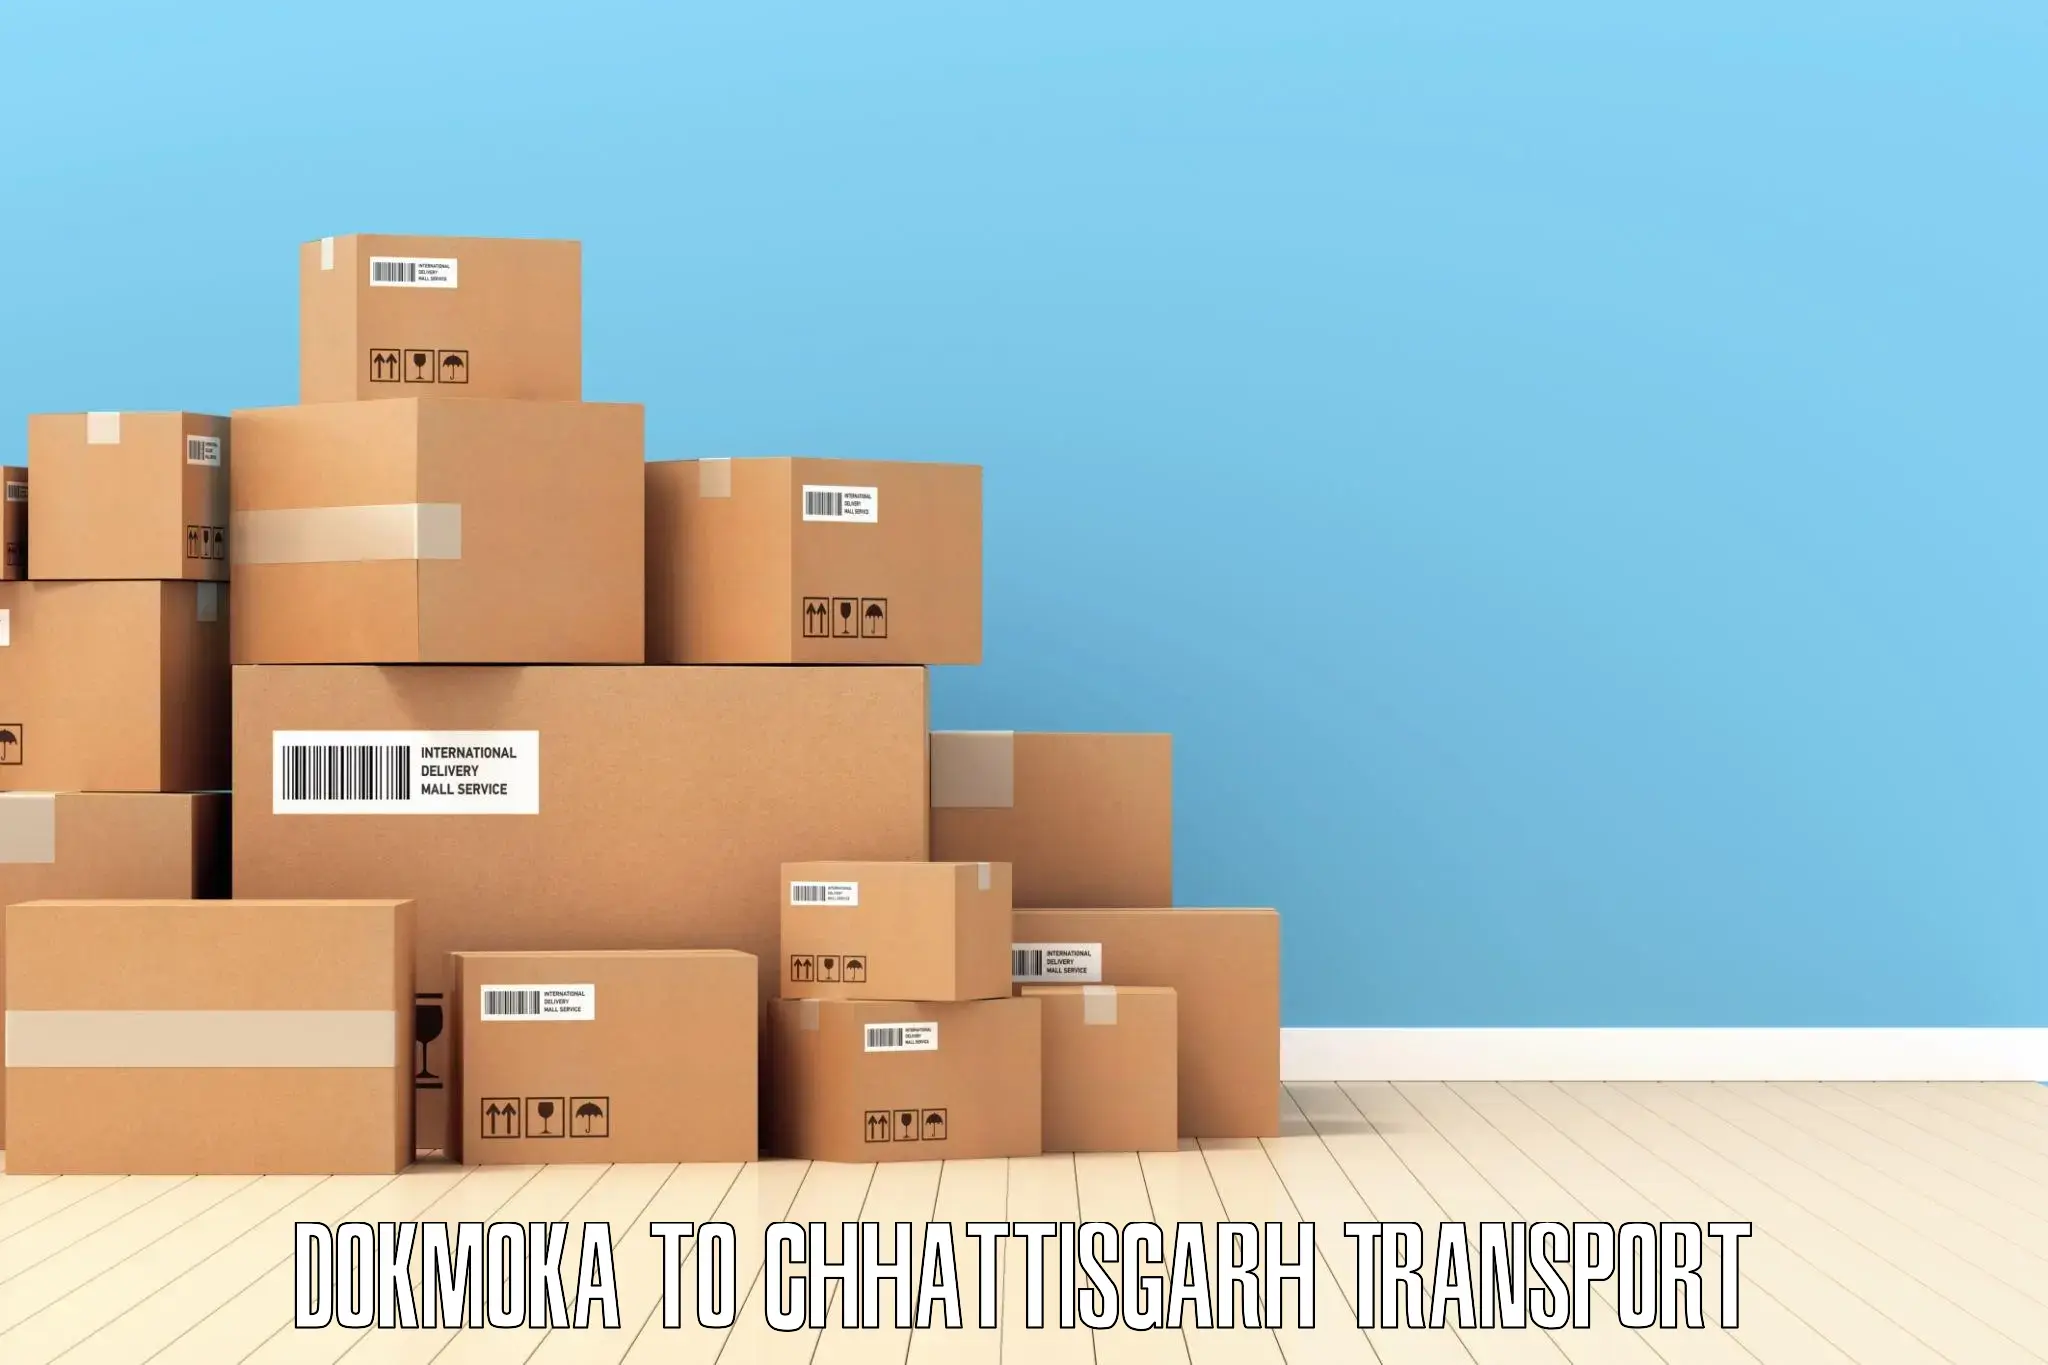 Luggage transport services Dokmoka to Korea Chhattisgarh